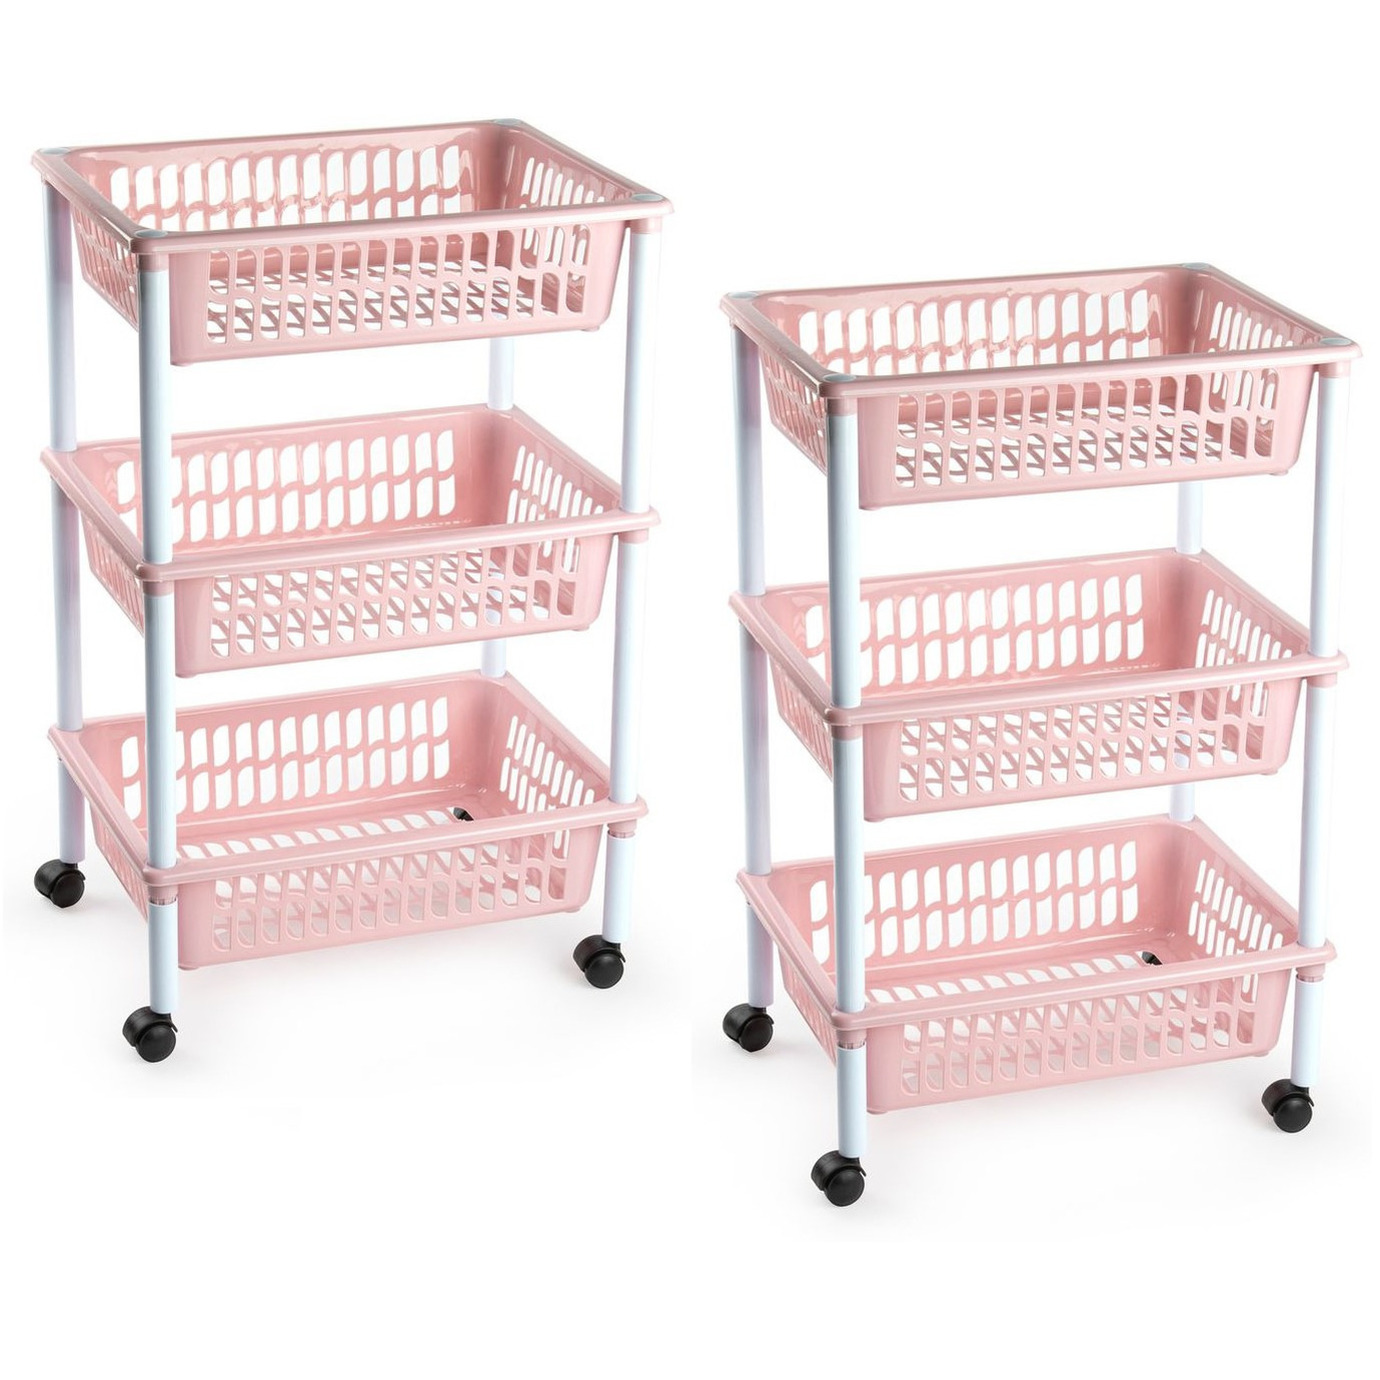 2x stuks opberg organiser trolleys-roltafels met 3 manden 62 cm in het oud roze